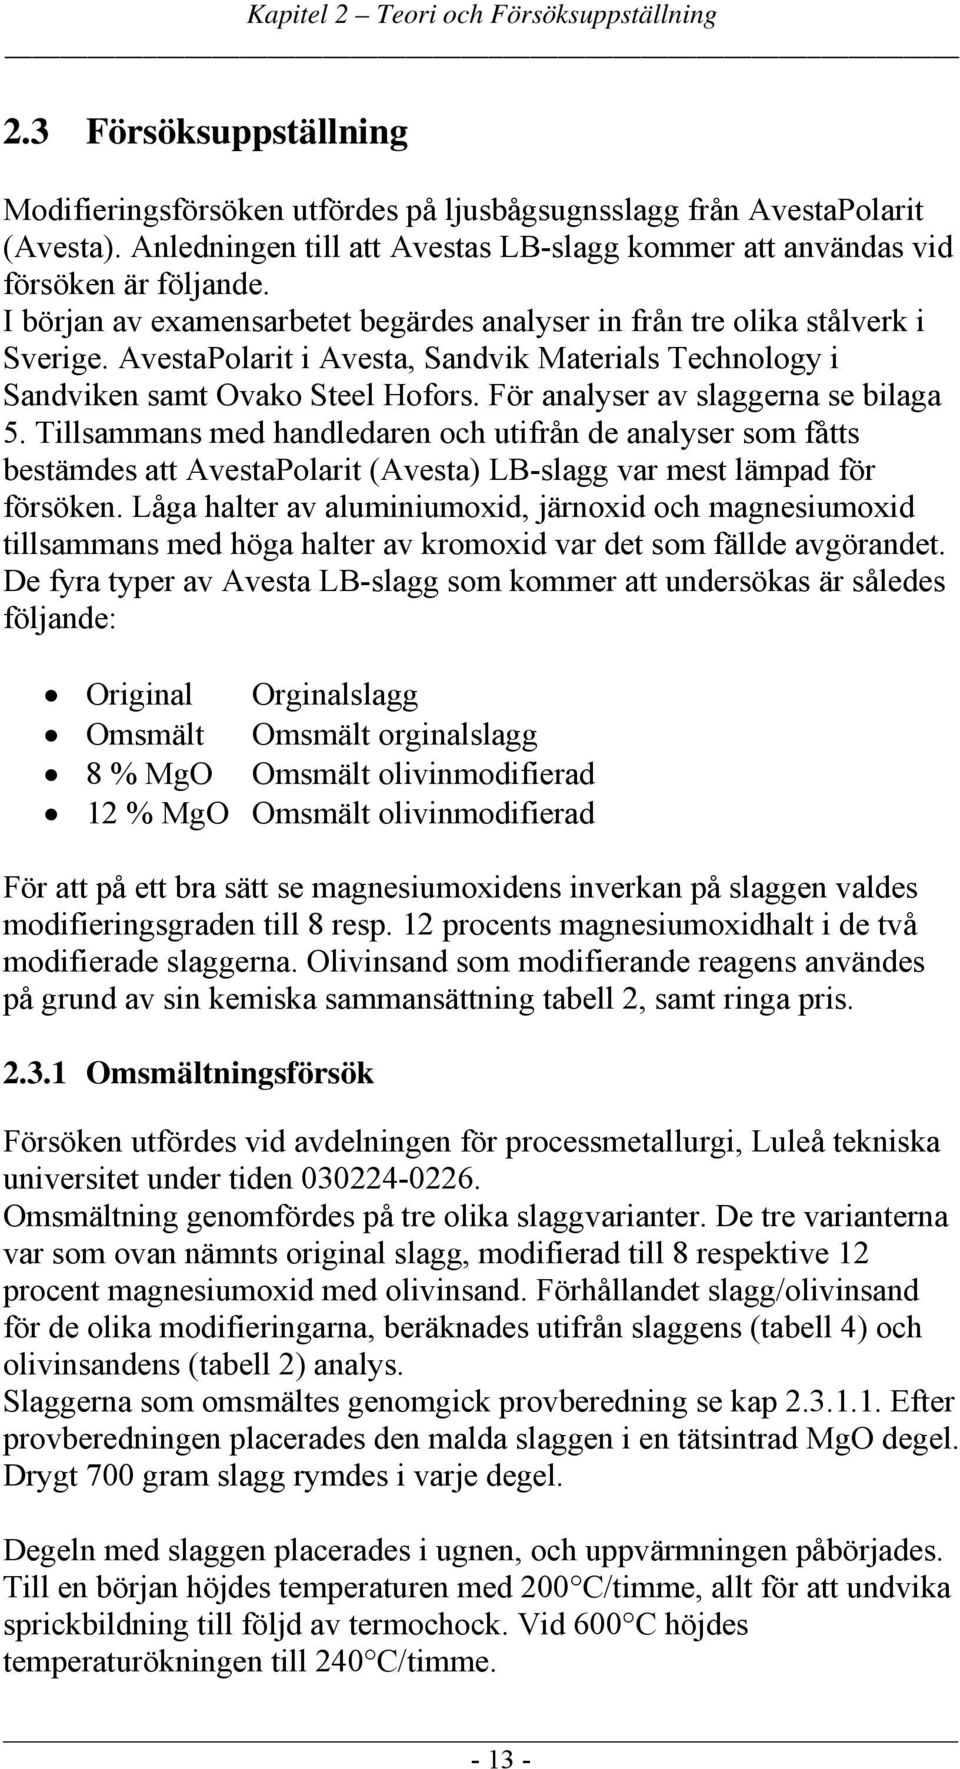 AvestaPolarit i Avesta, Sandvik Materials Technology i Sandviken samt Ovako Steel Hofors. För analyser av slaggerna se bilaga 5.